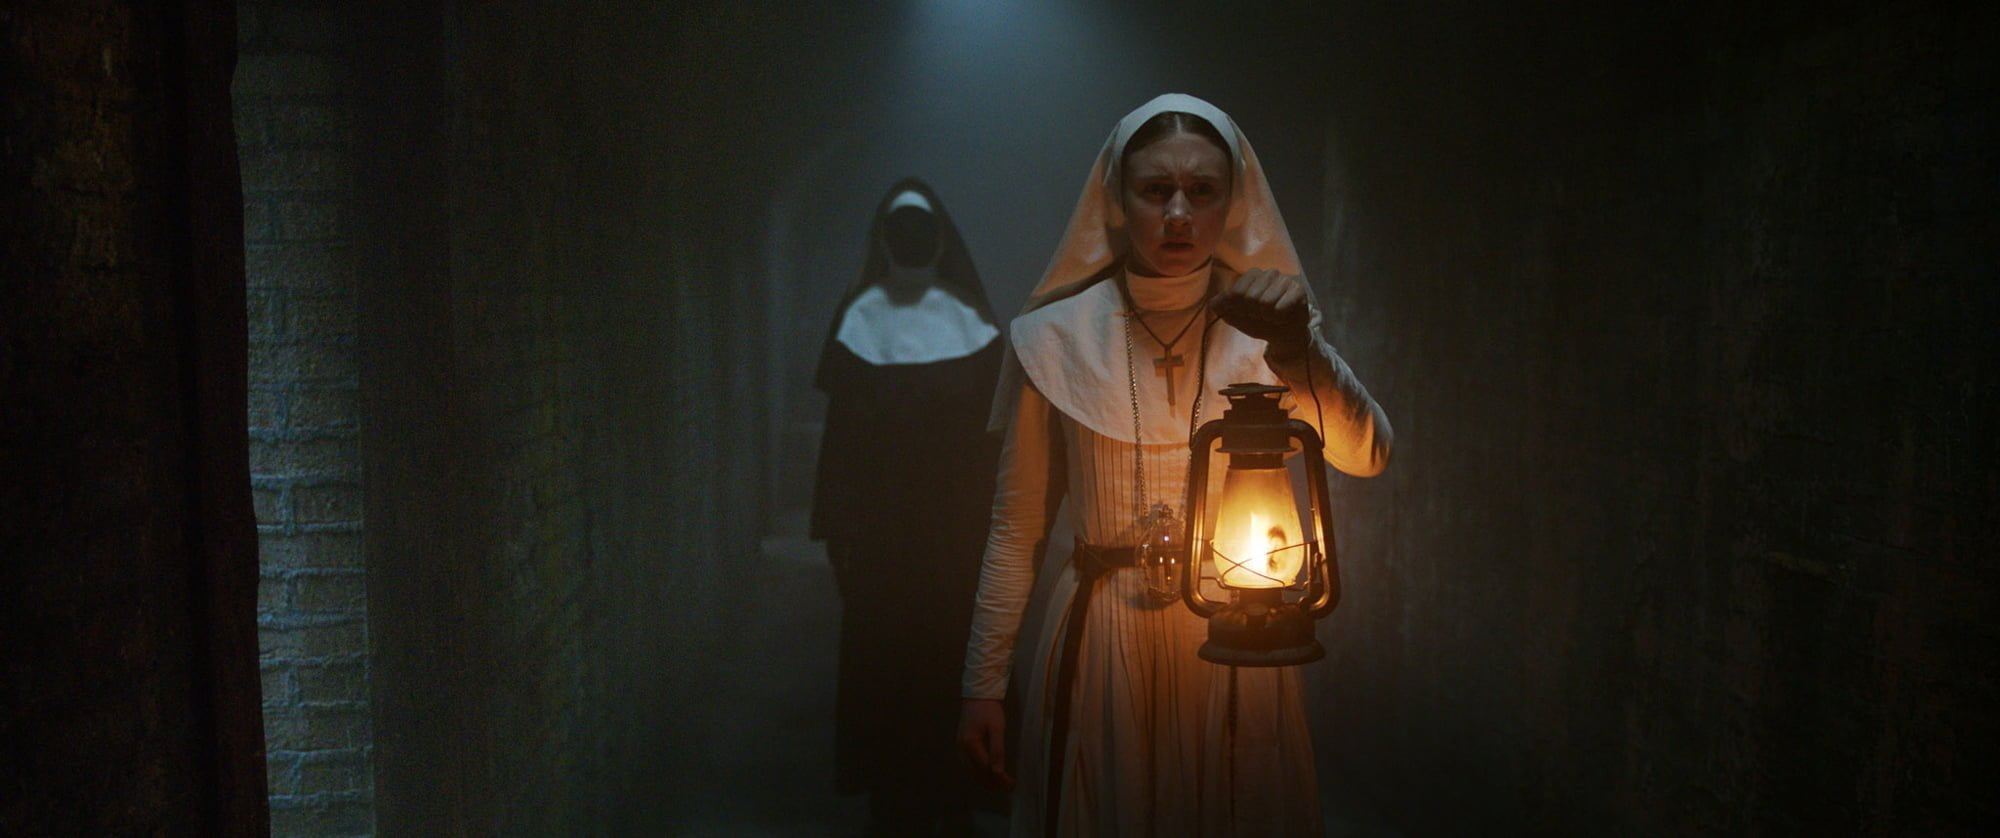 Film] La Nonne, de Corin Hardy (2018) - Dark Side Reviews